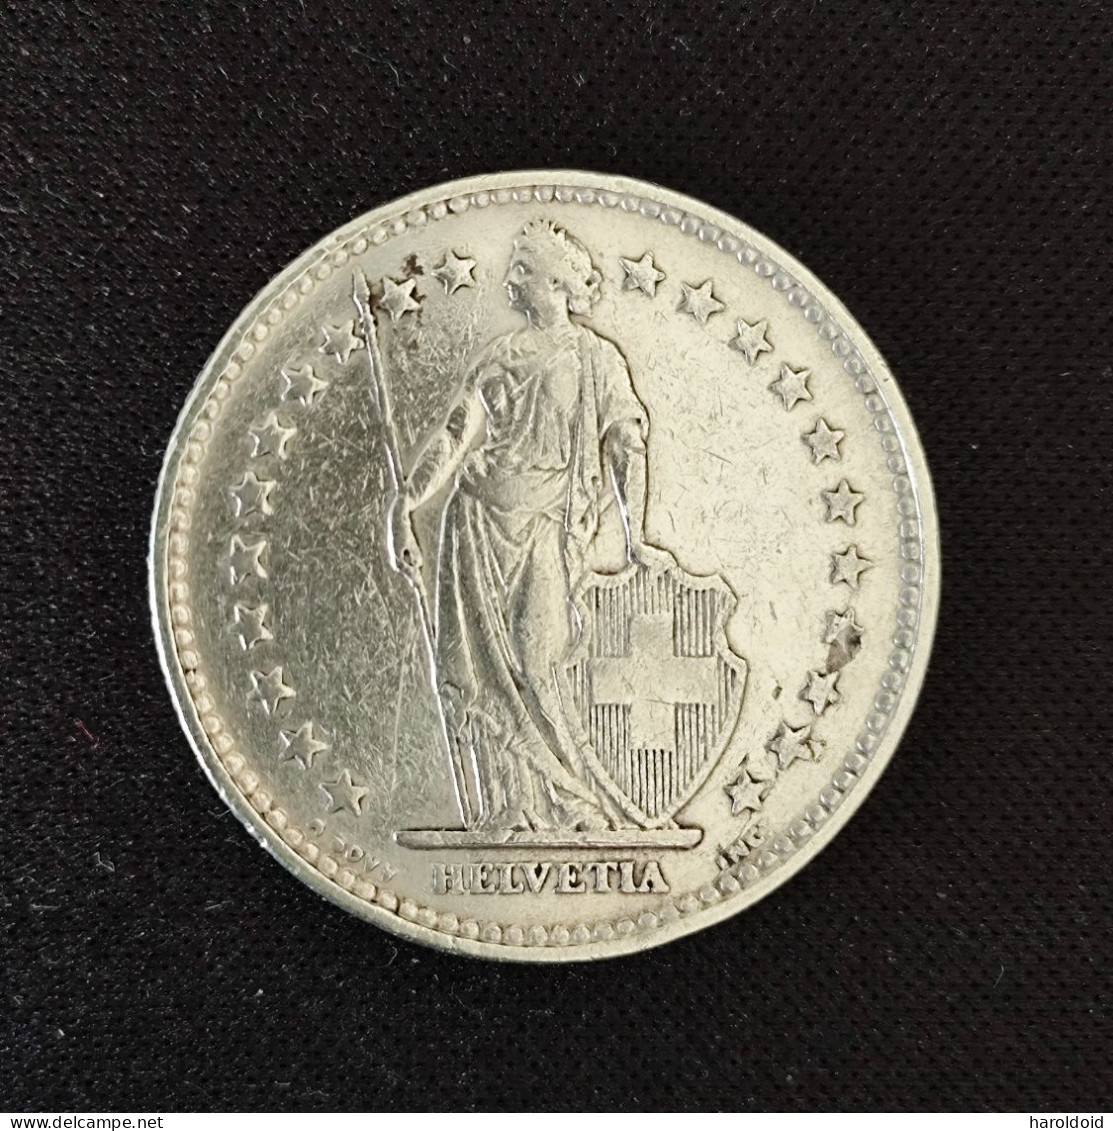 SUISSE - 2 FRANCS 1921 TTB+ - 2 Francs